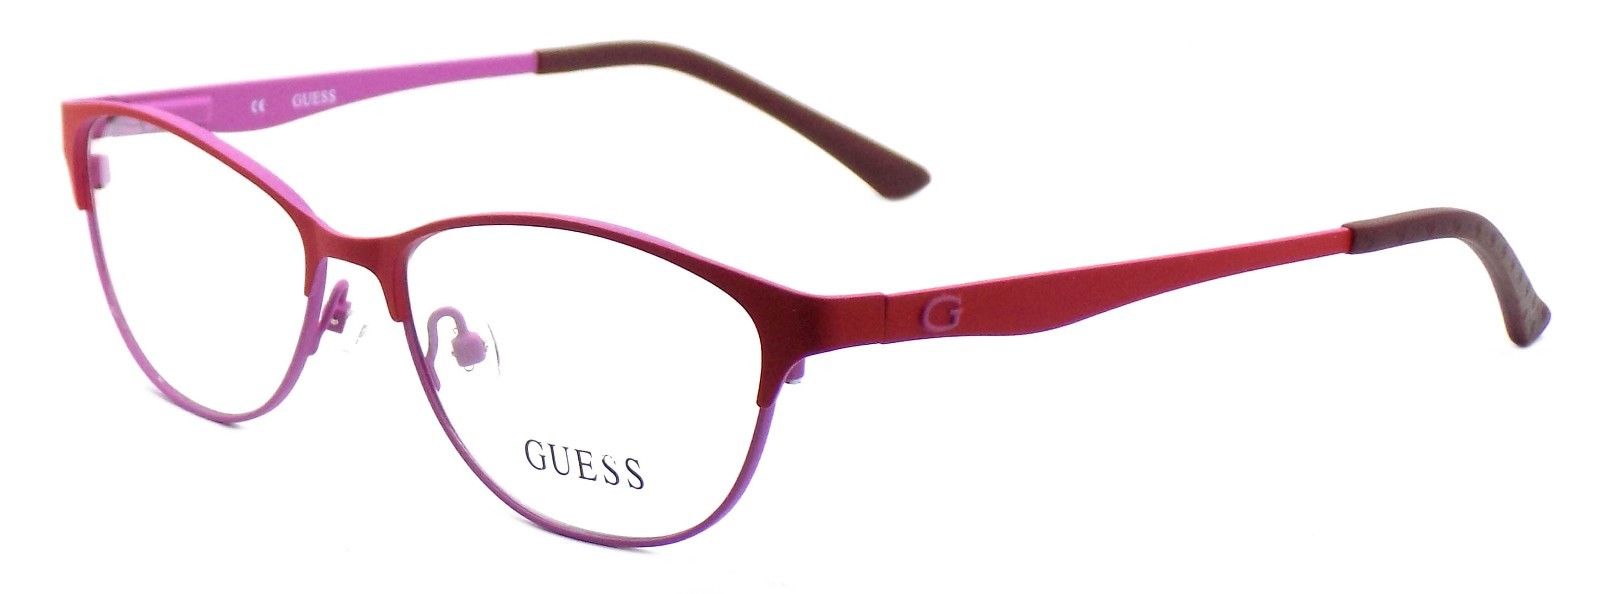 1-GUESS GU2504 073 Women's Eyeglasses Frames 53-15-135 Matte Red / Pink + CASE-664689697625-IKSpecs